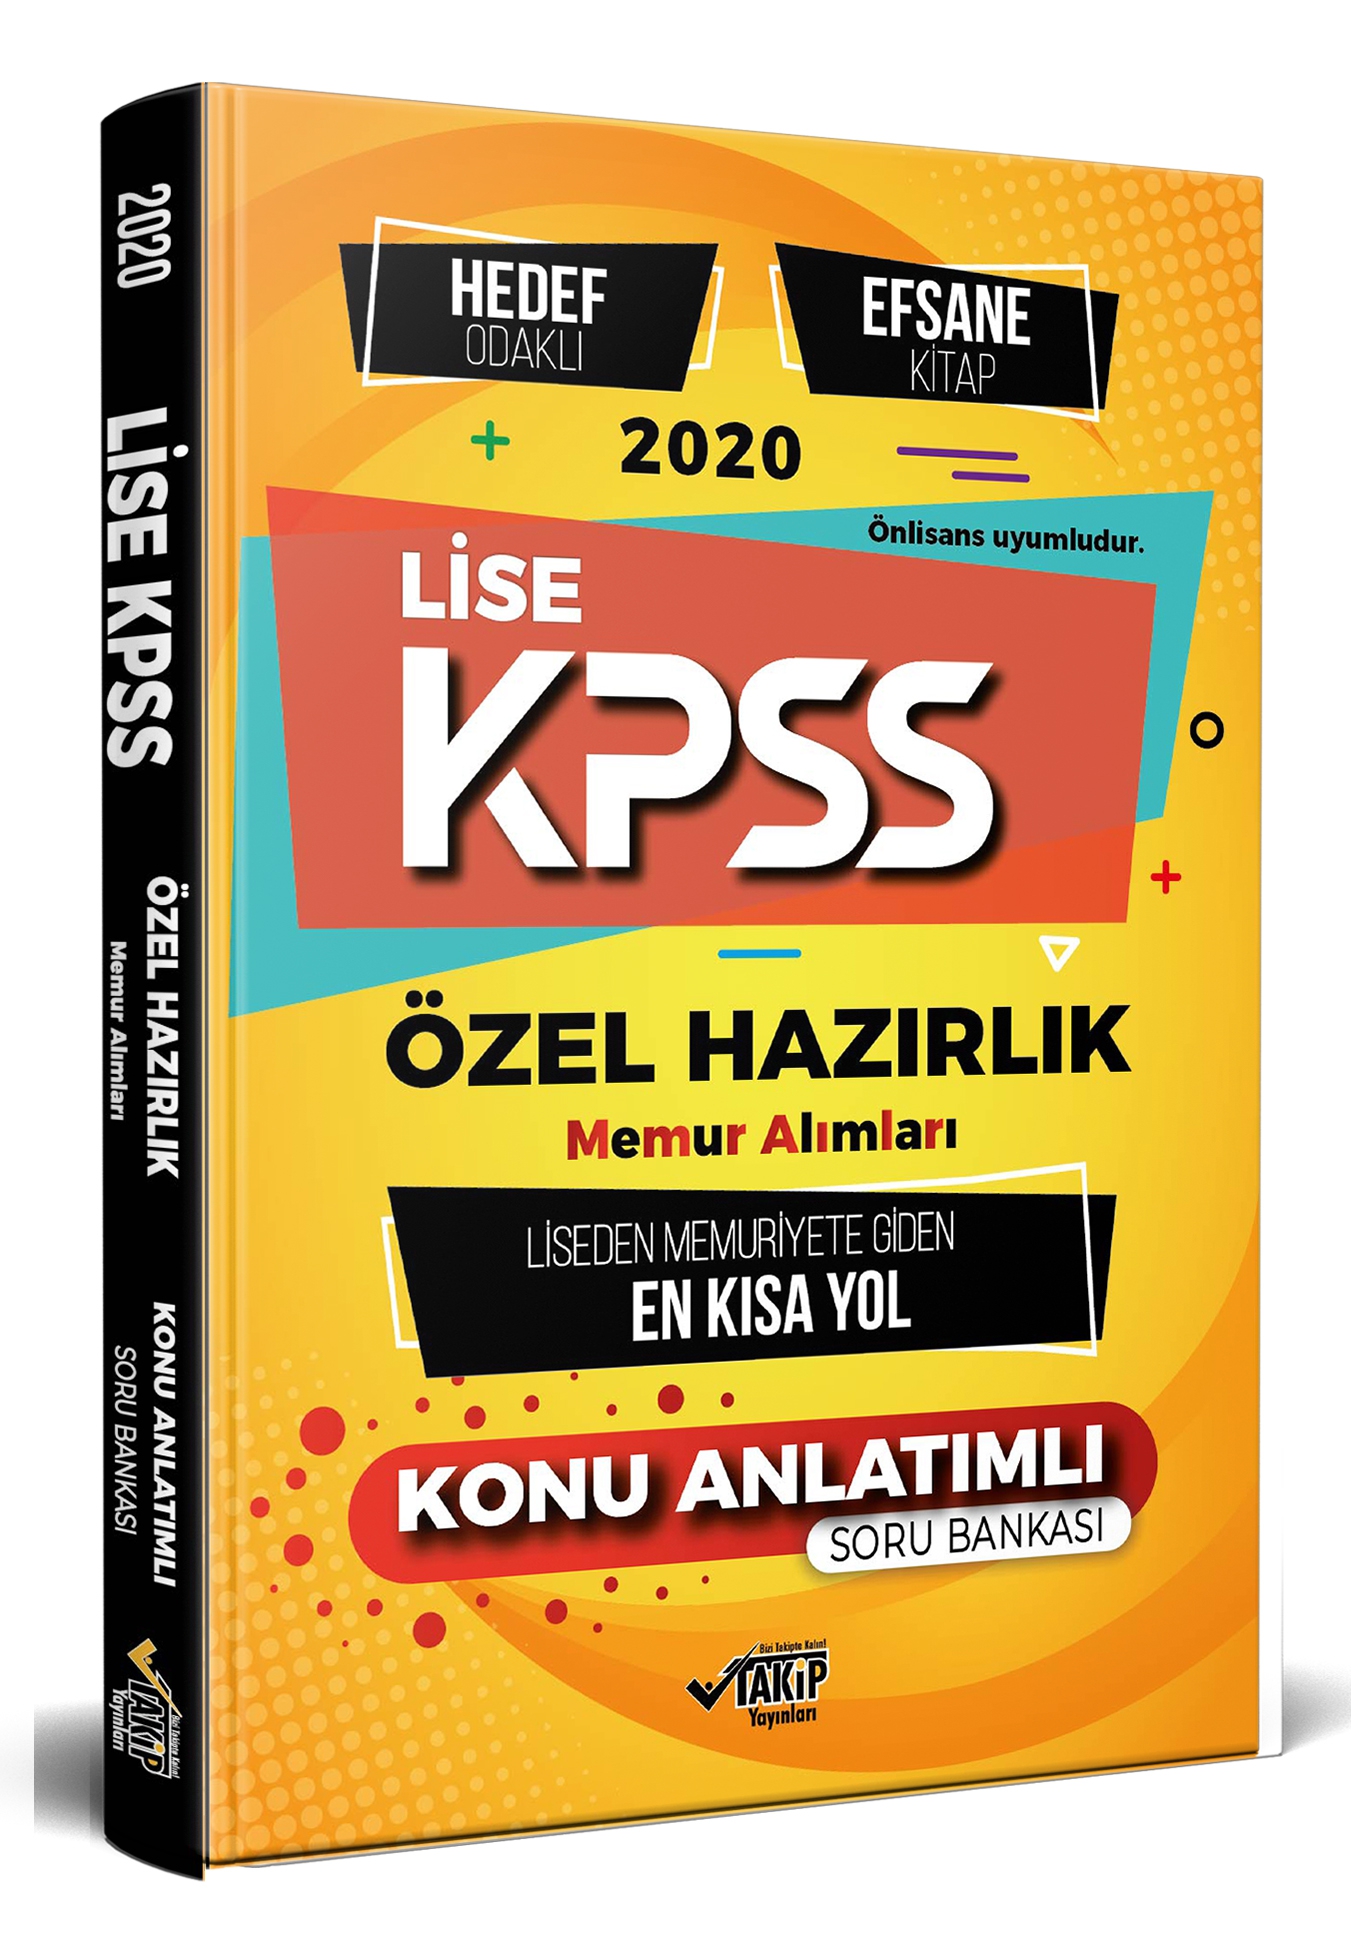 Lise KPSS Özel Hazırlık - Hedef Odaklı Efsane Konu Anlatımı - Memuriyete Giden En Kısa Yol 